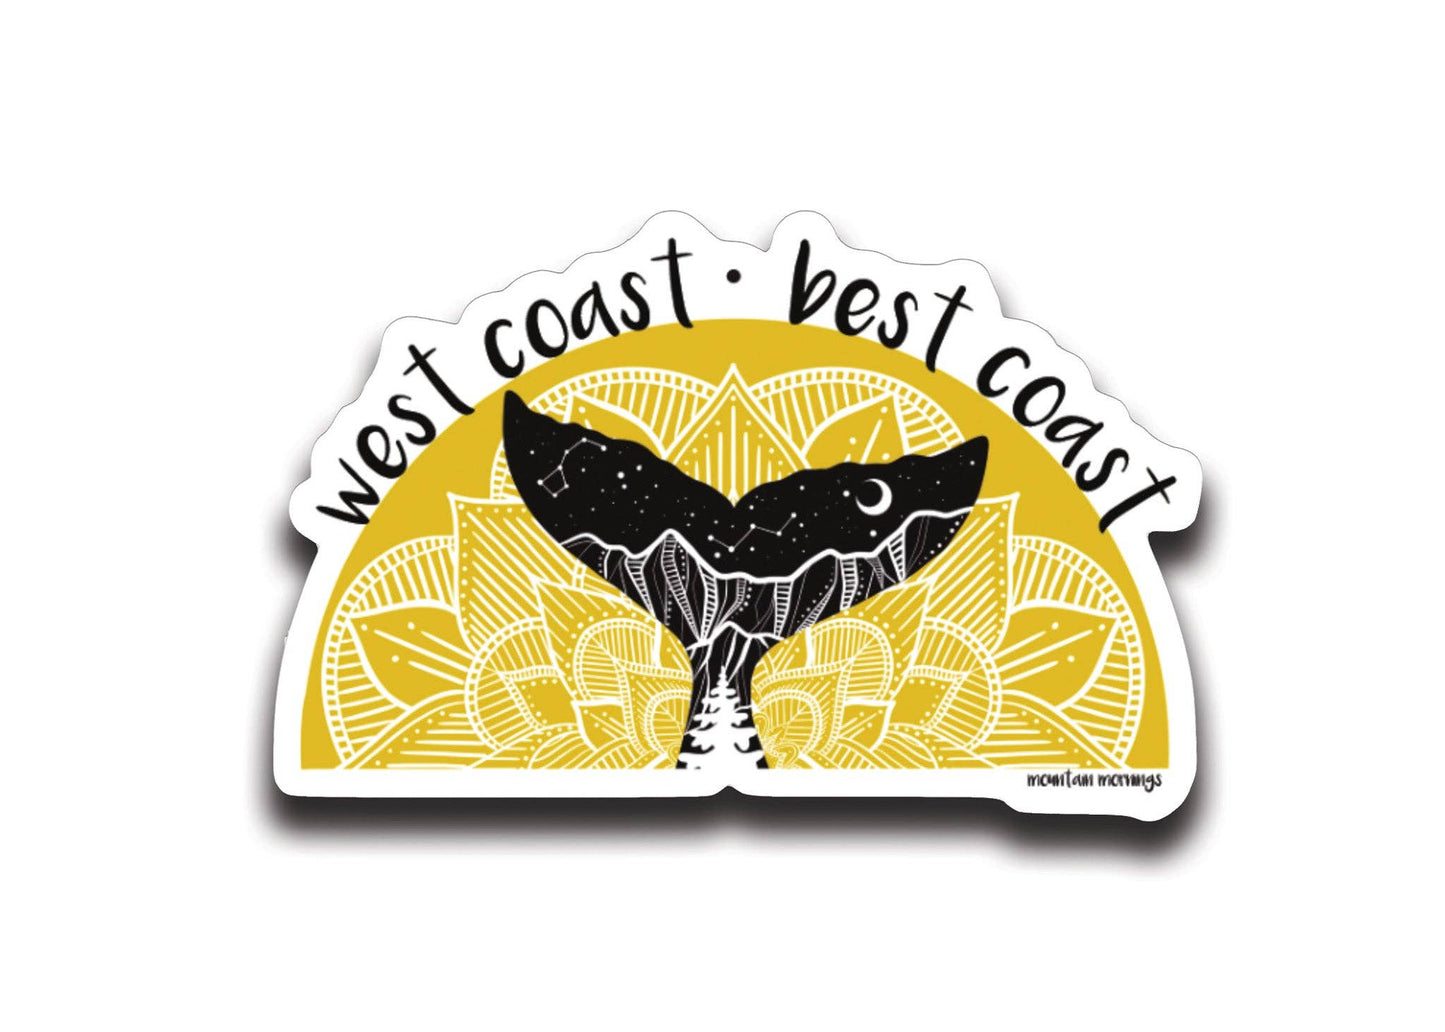 Mountain Mornings - West Coast, Best Coast Sticker